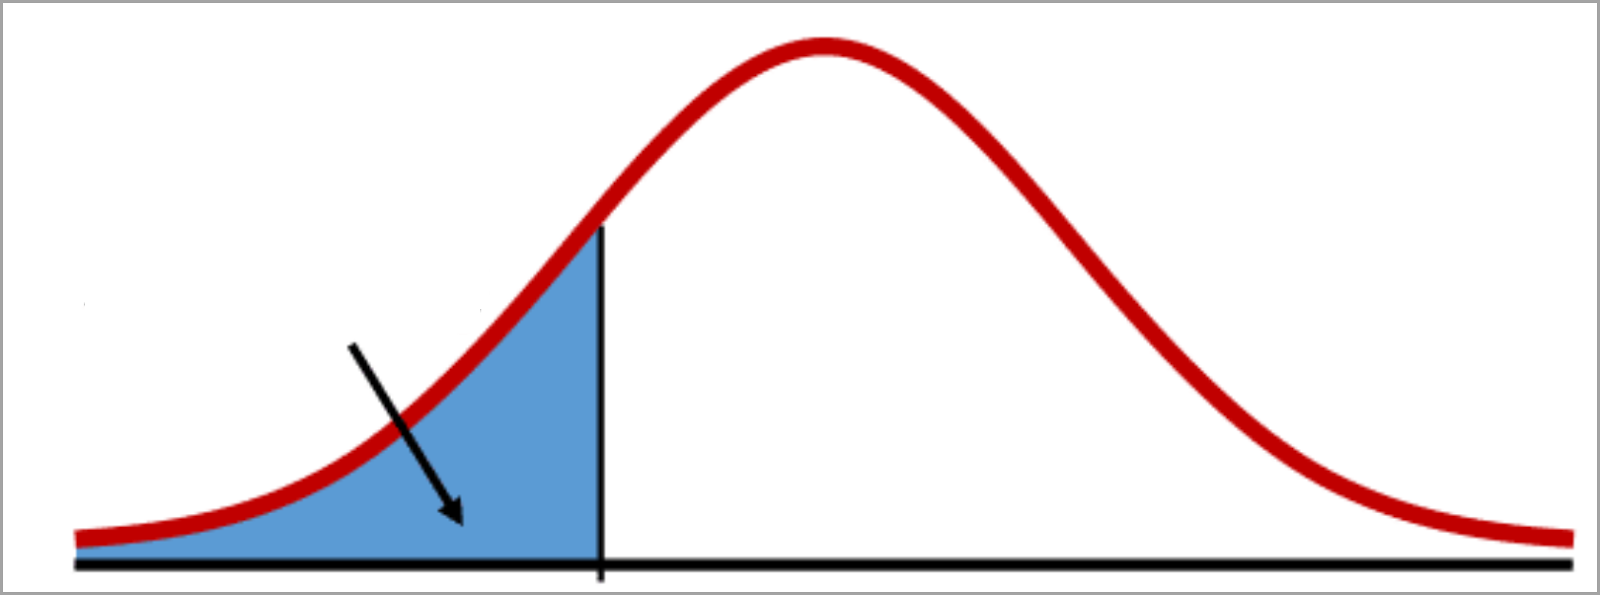 Eine Dichtekurve mit einem schattierten Bereich (Intervall)